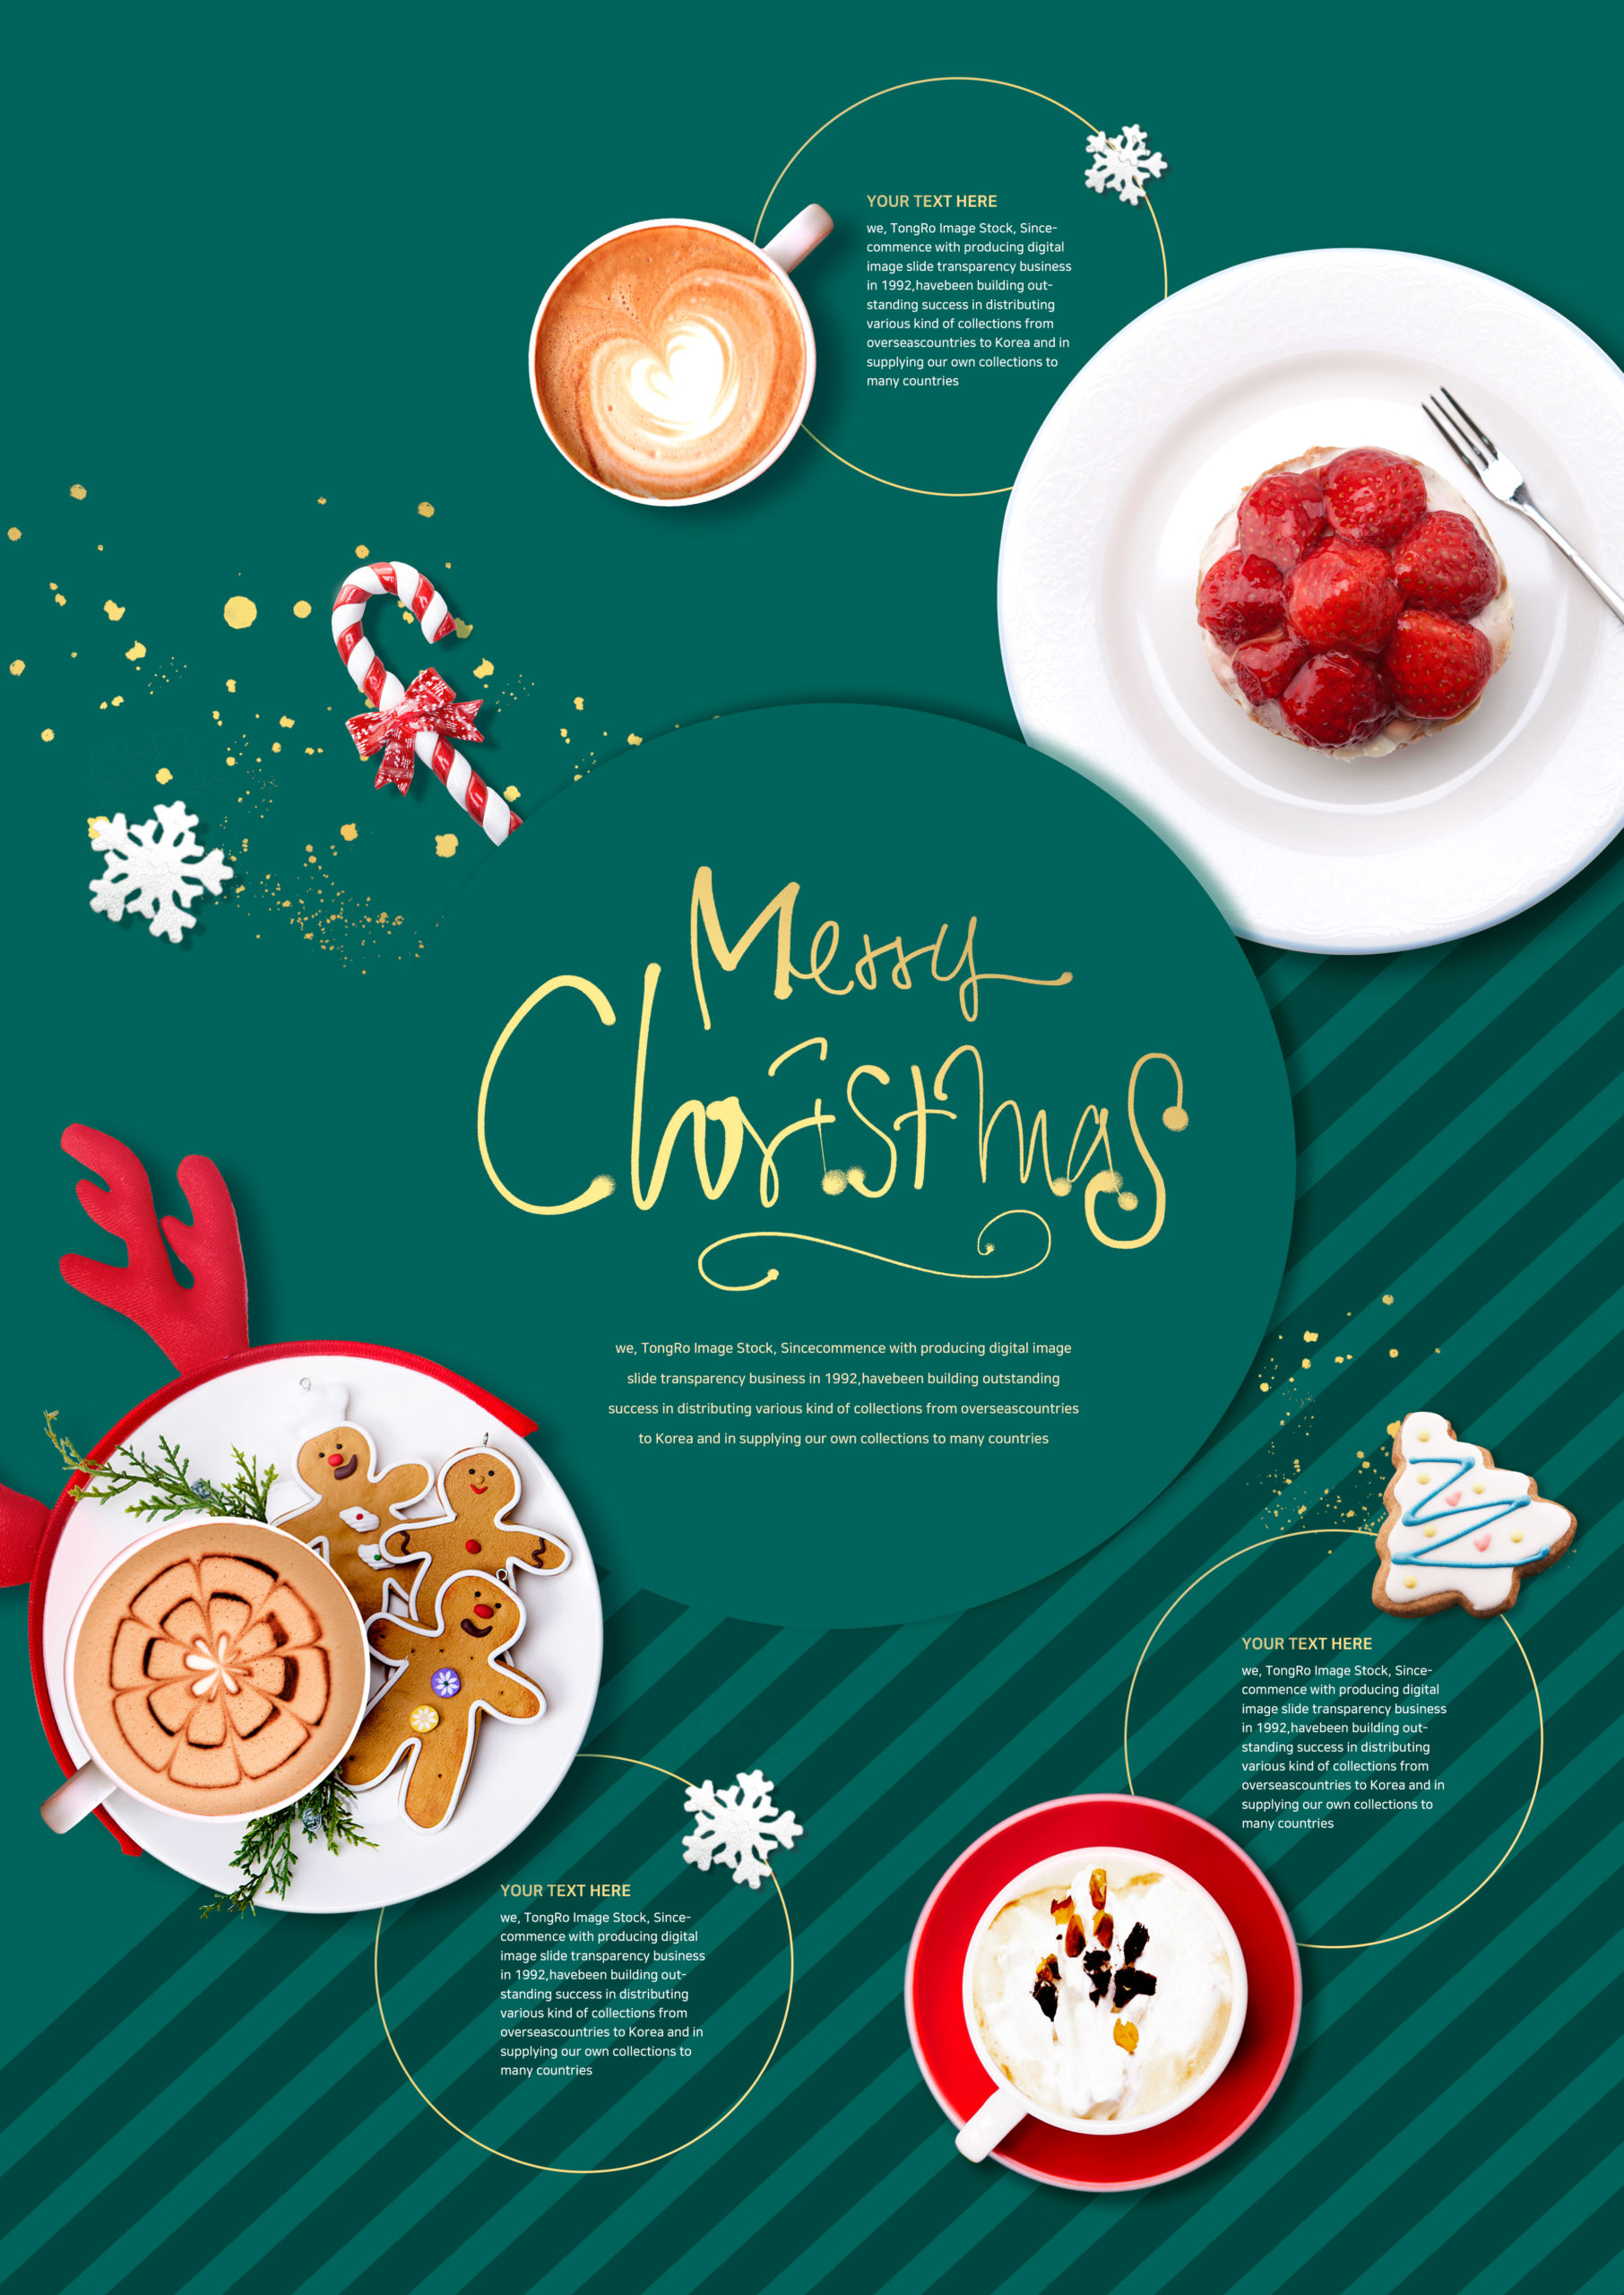 圣诞节甜品/咖啡美食促销宣传海报/传单模板插图